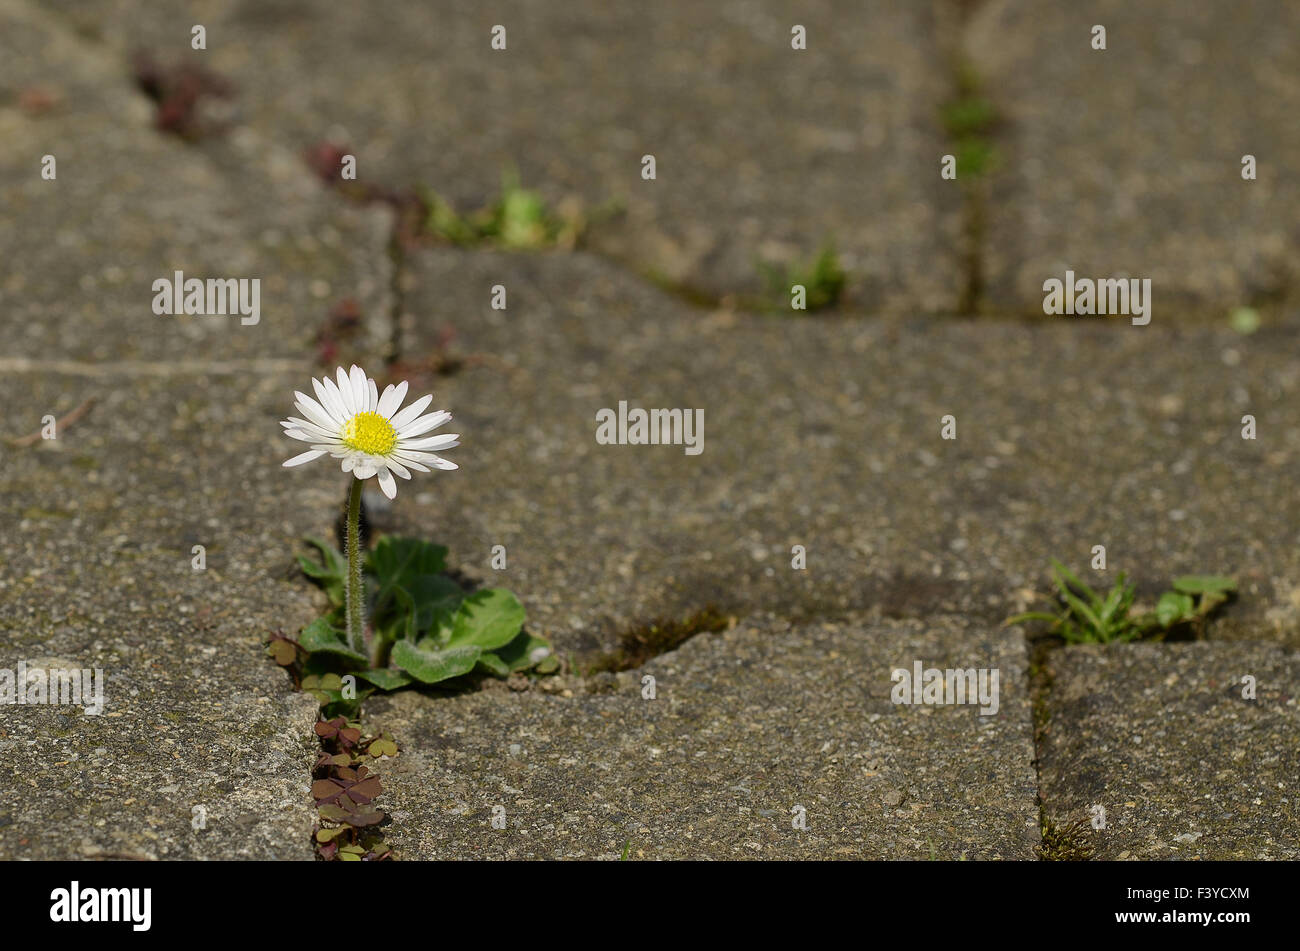 daisy, flower, blossom Stock Photo